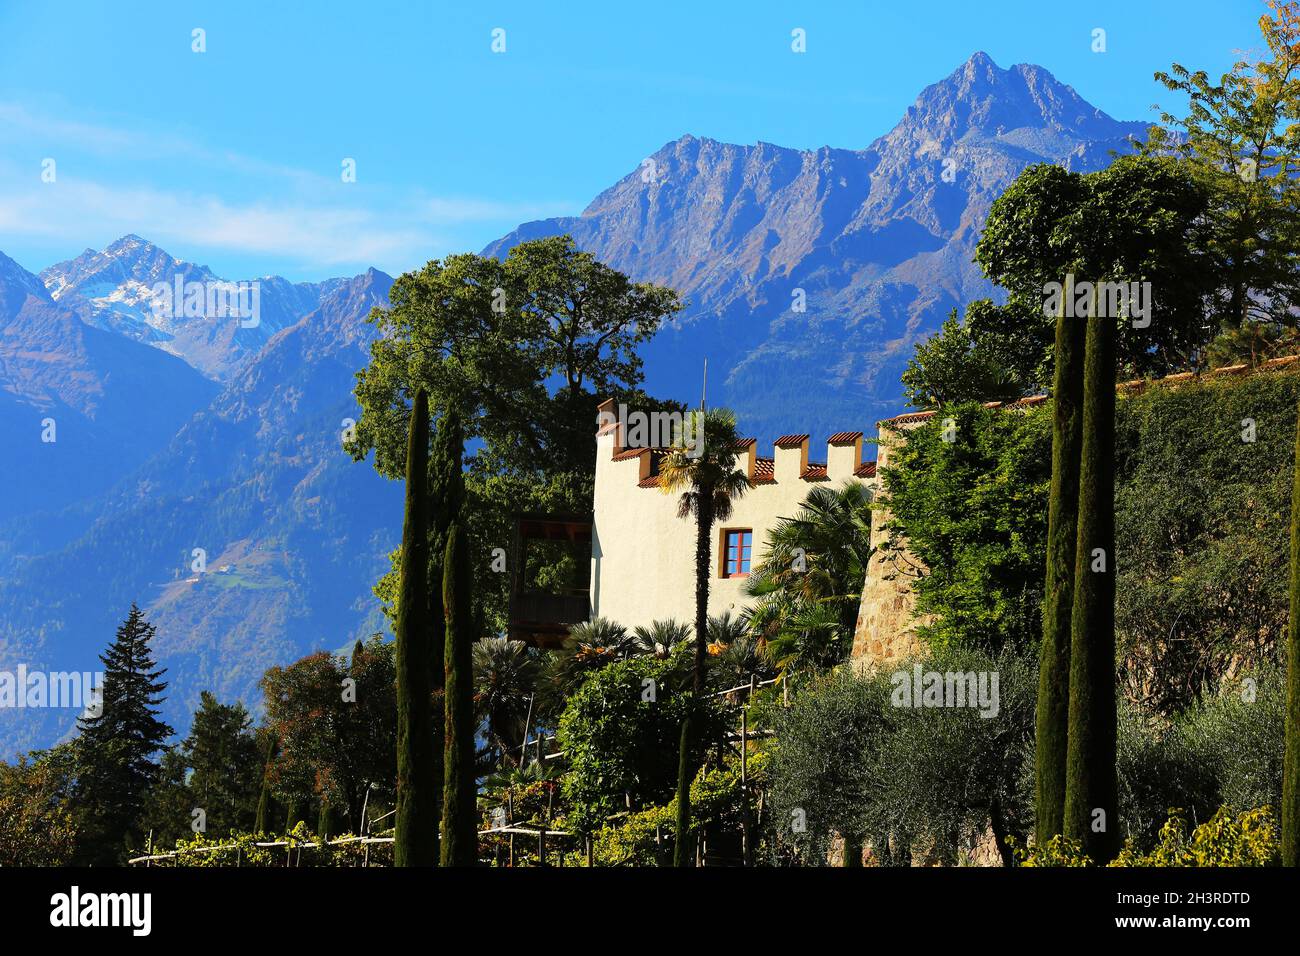 Meran, die Gärten von Schloss Trauttmansdorff  eröffnen beeindruckende Perspektiven auf exotische Gartenlandschaften, Südtirol, Dolomiten, Italien Stock Photo